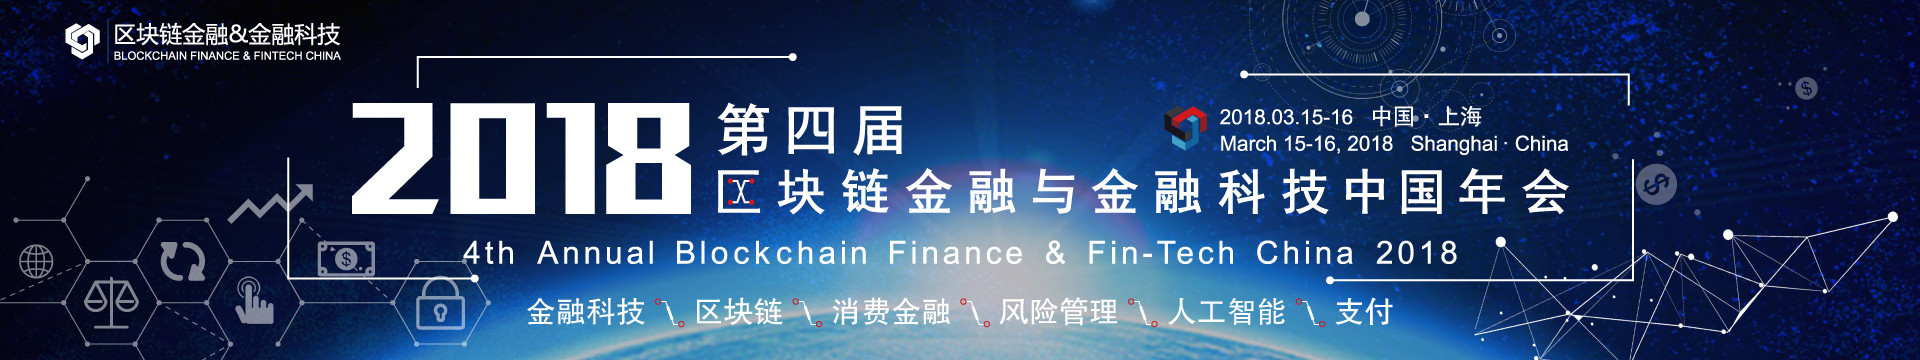 第四届区块链金融与金融科技中国年会2018